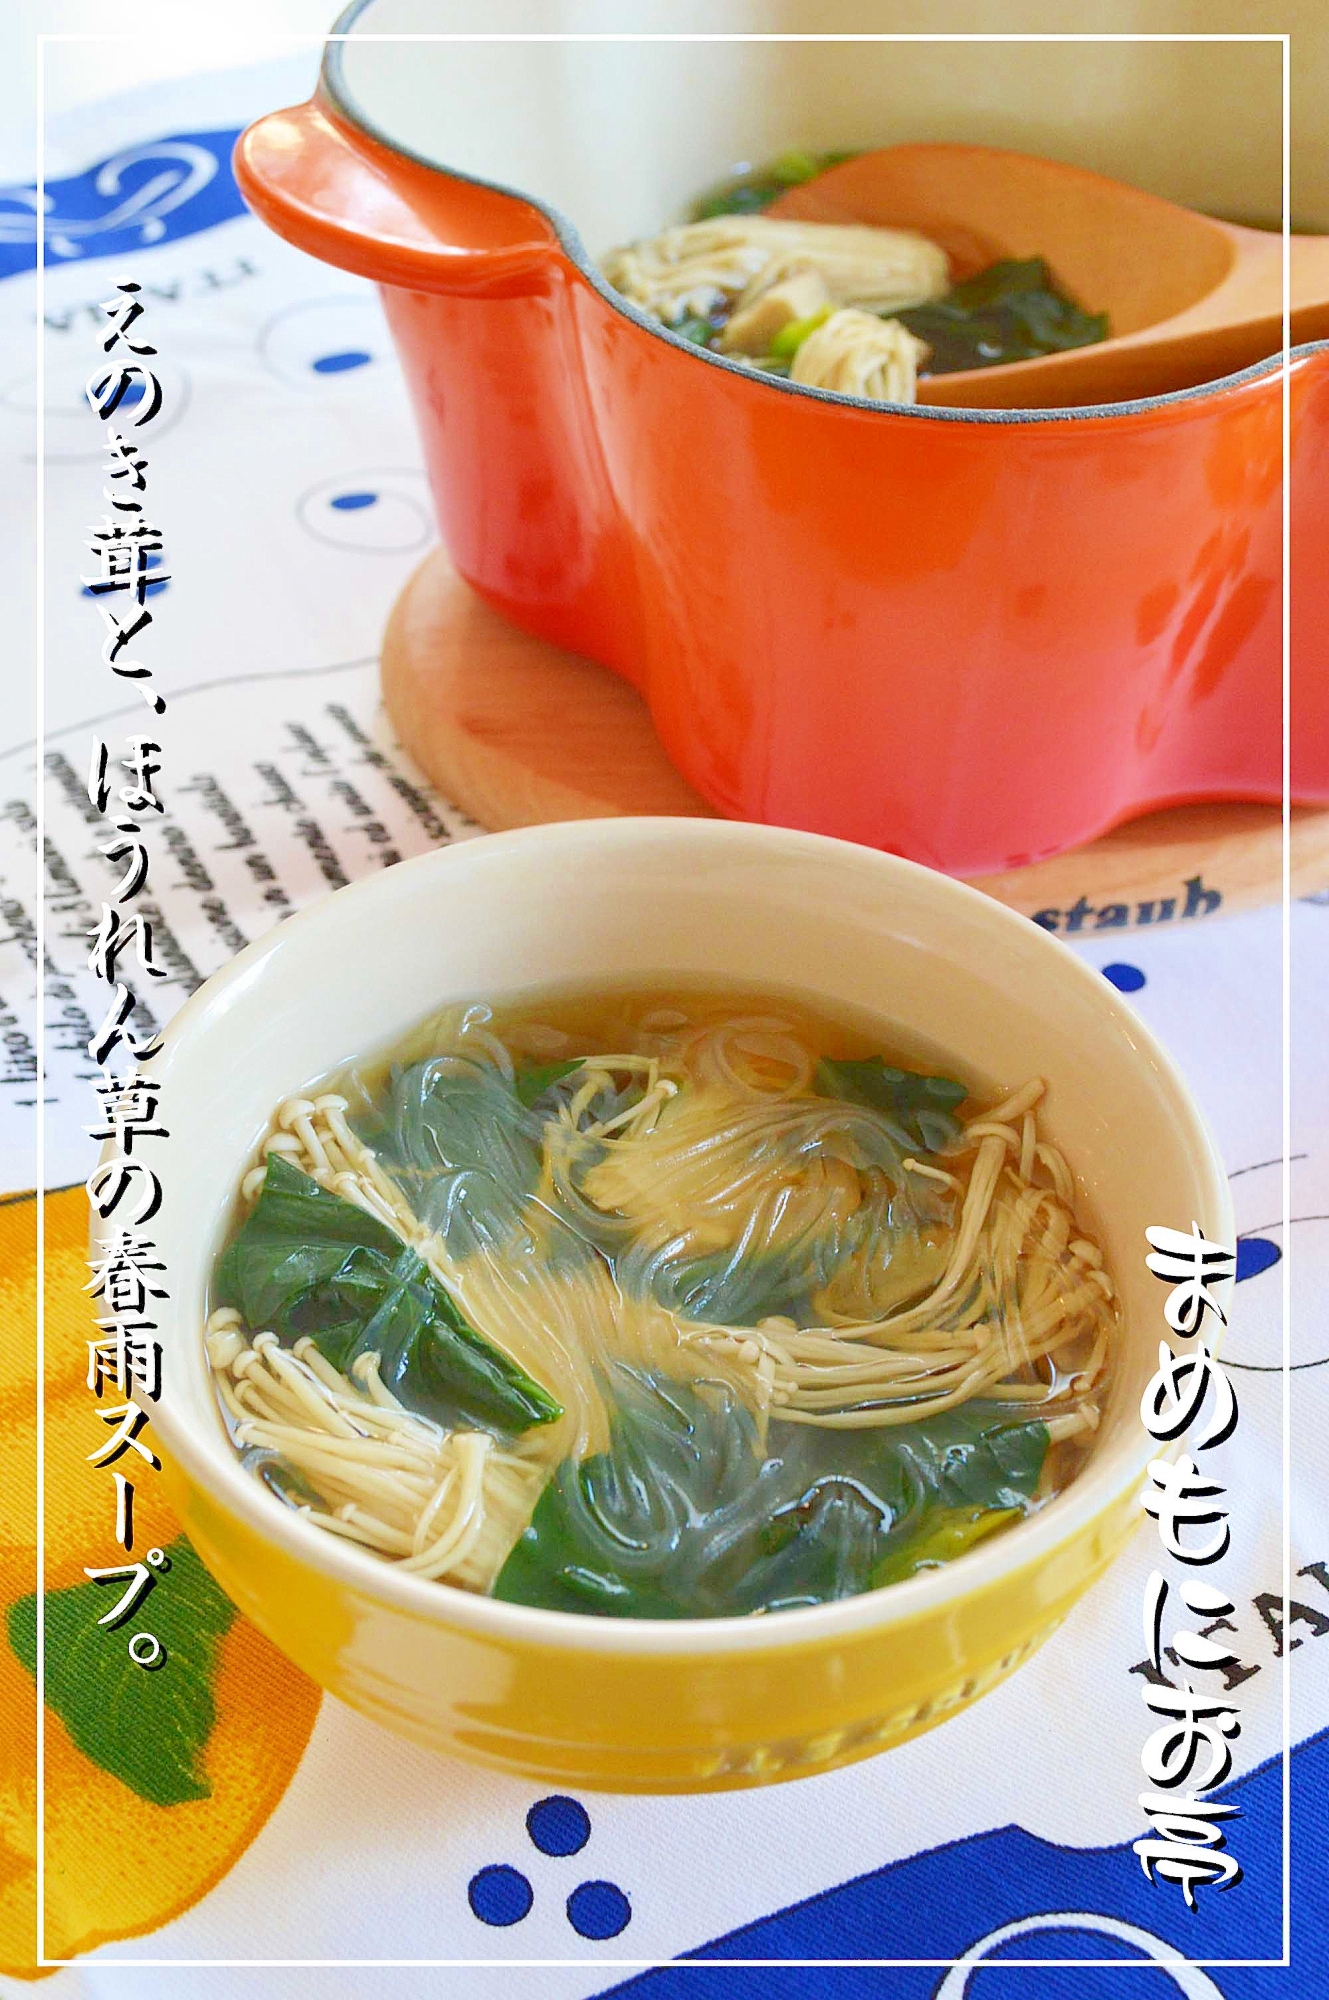 ヘルシ〜♪えのき茸とほうれん草の☆春雨スープ